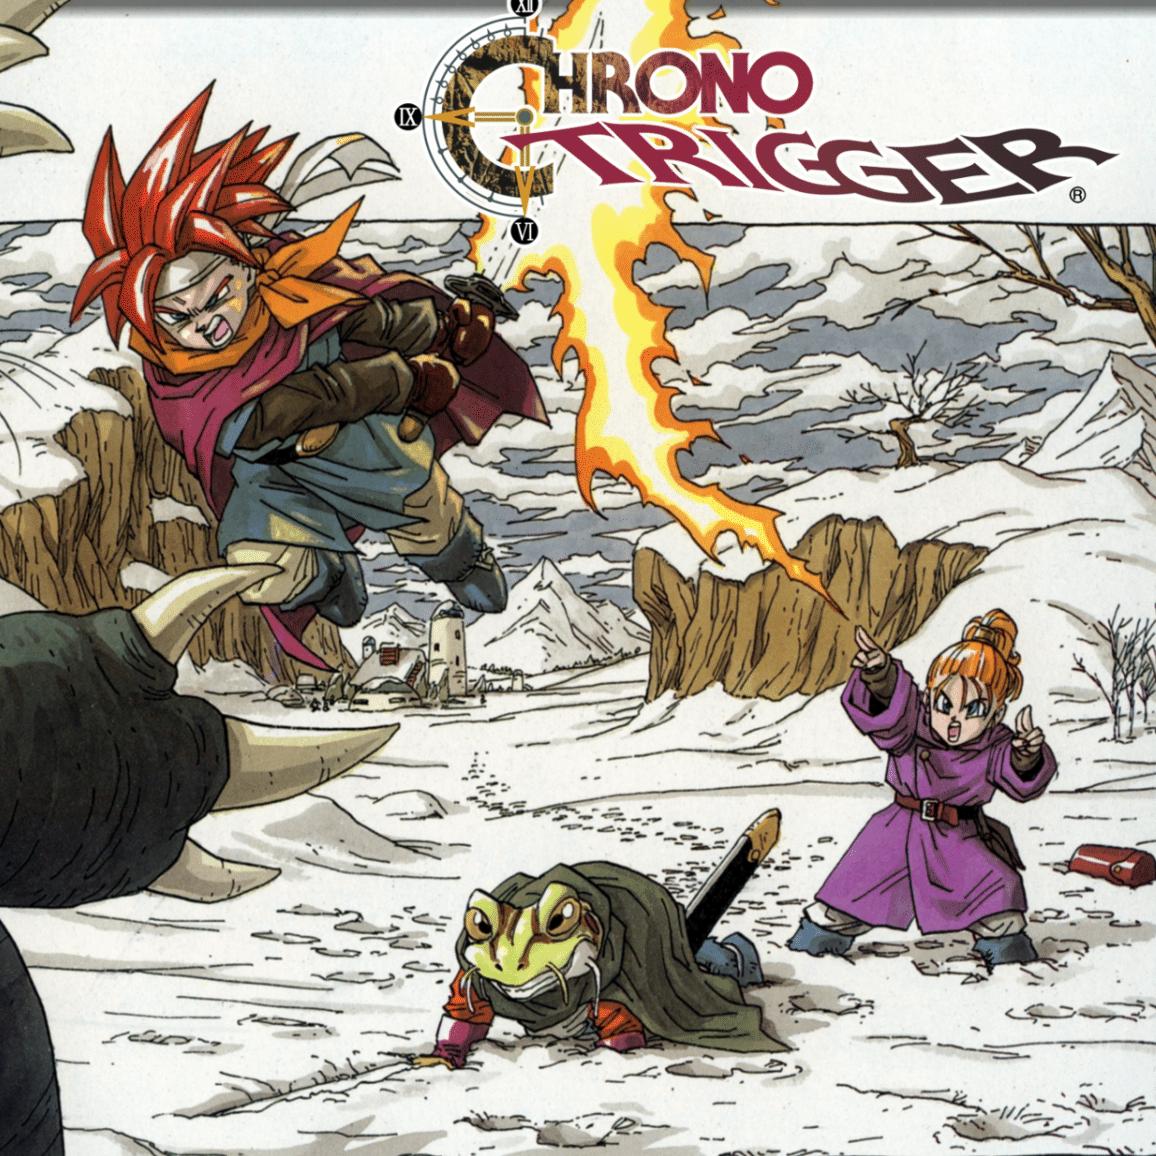 Chrono Trigger for snes